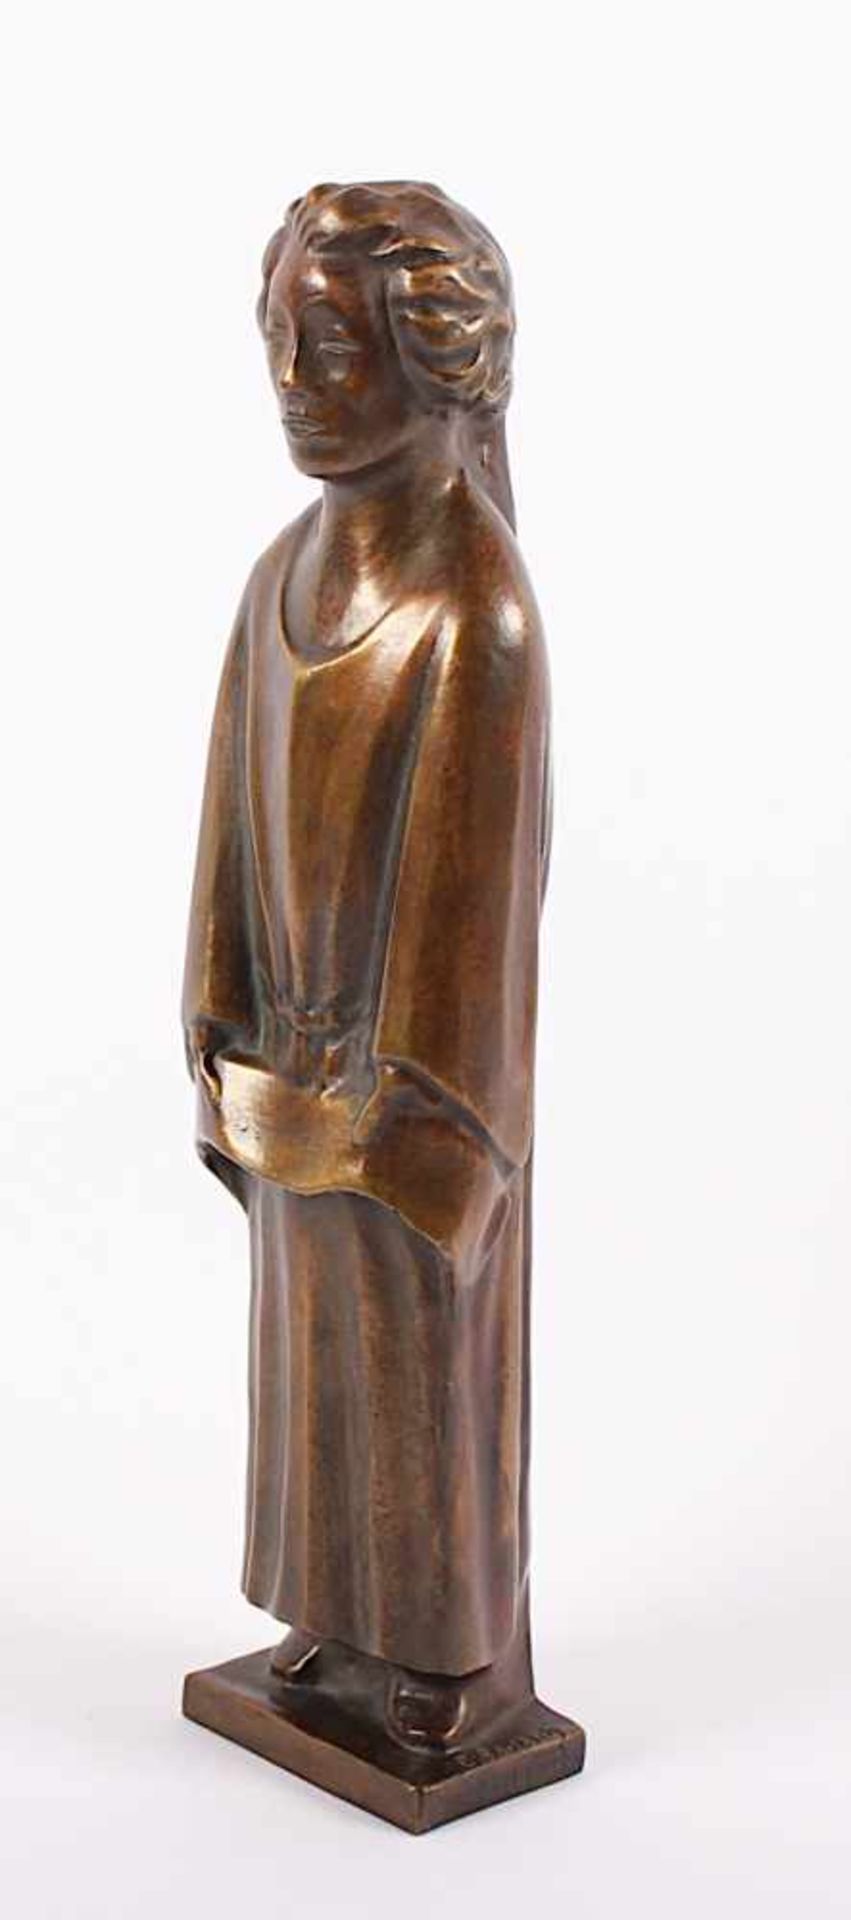 BARLACH, Ernst, "Engel", Bronze, H 32,5, seitlich nummeriert 471/980, Gießermarke Ars mundi, - Bild 2 aus 3